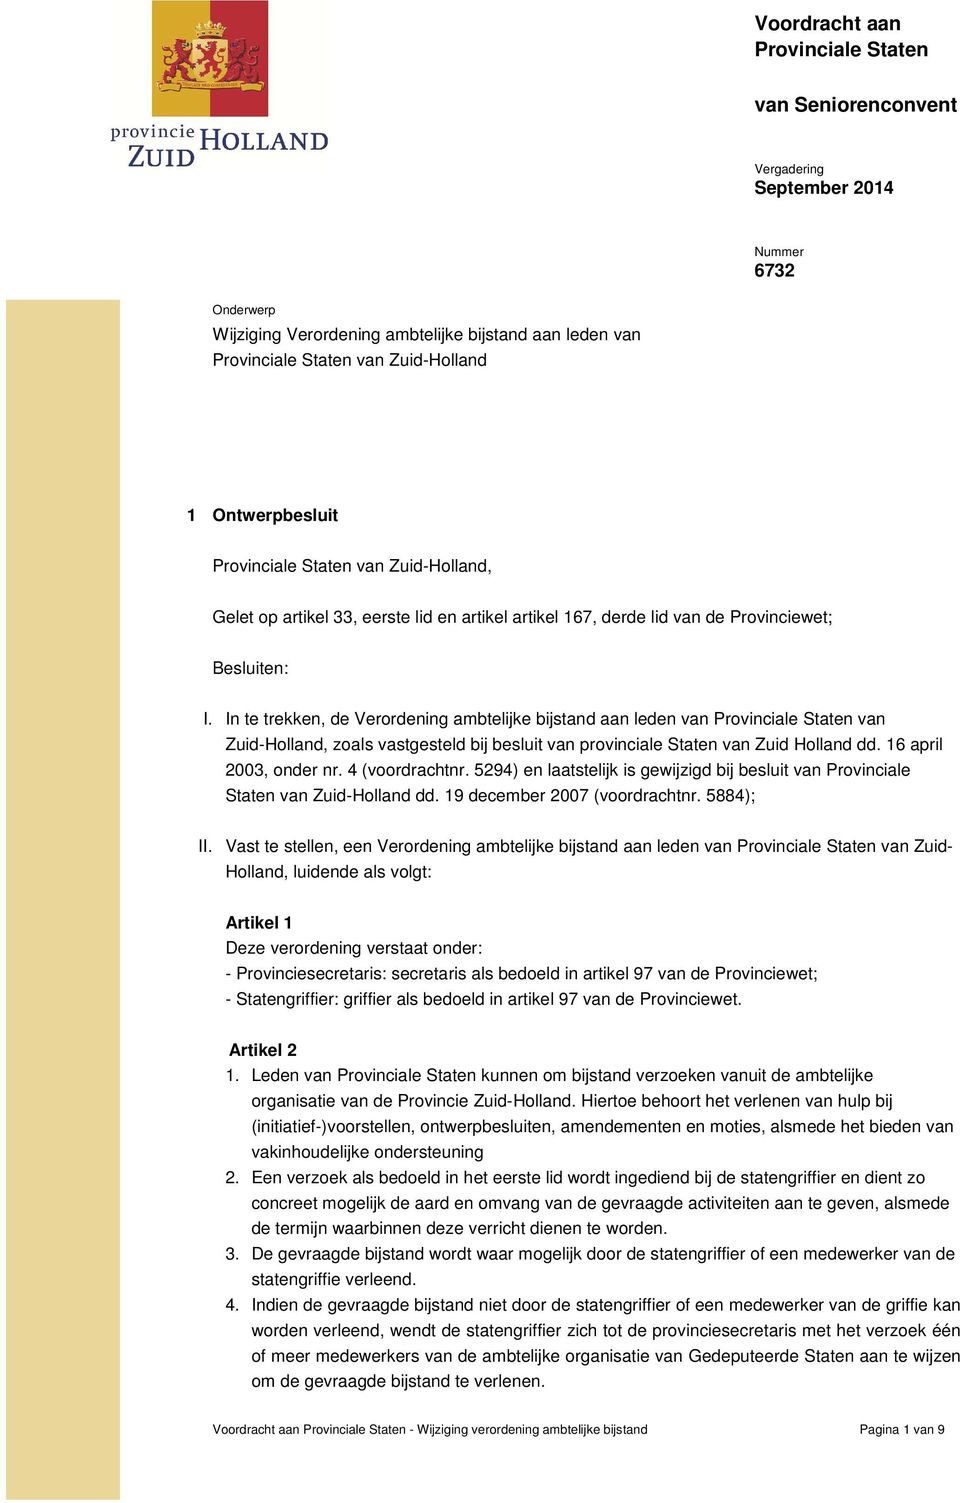 In te trekken, de Verordening ambtelijke bijstand aan leden van Provinciale Staten van Zuid-Holland, zoals vastgesteld bij besluit van provinciale Staten van Zuid Holland dd. 16 april 2003, onder nr.